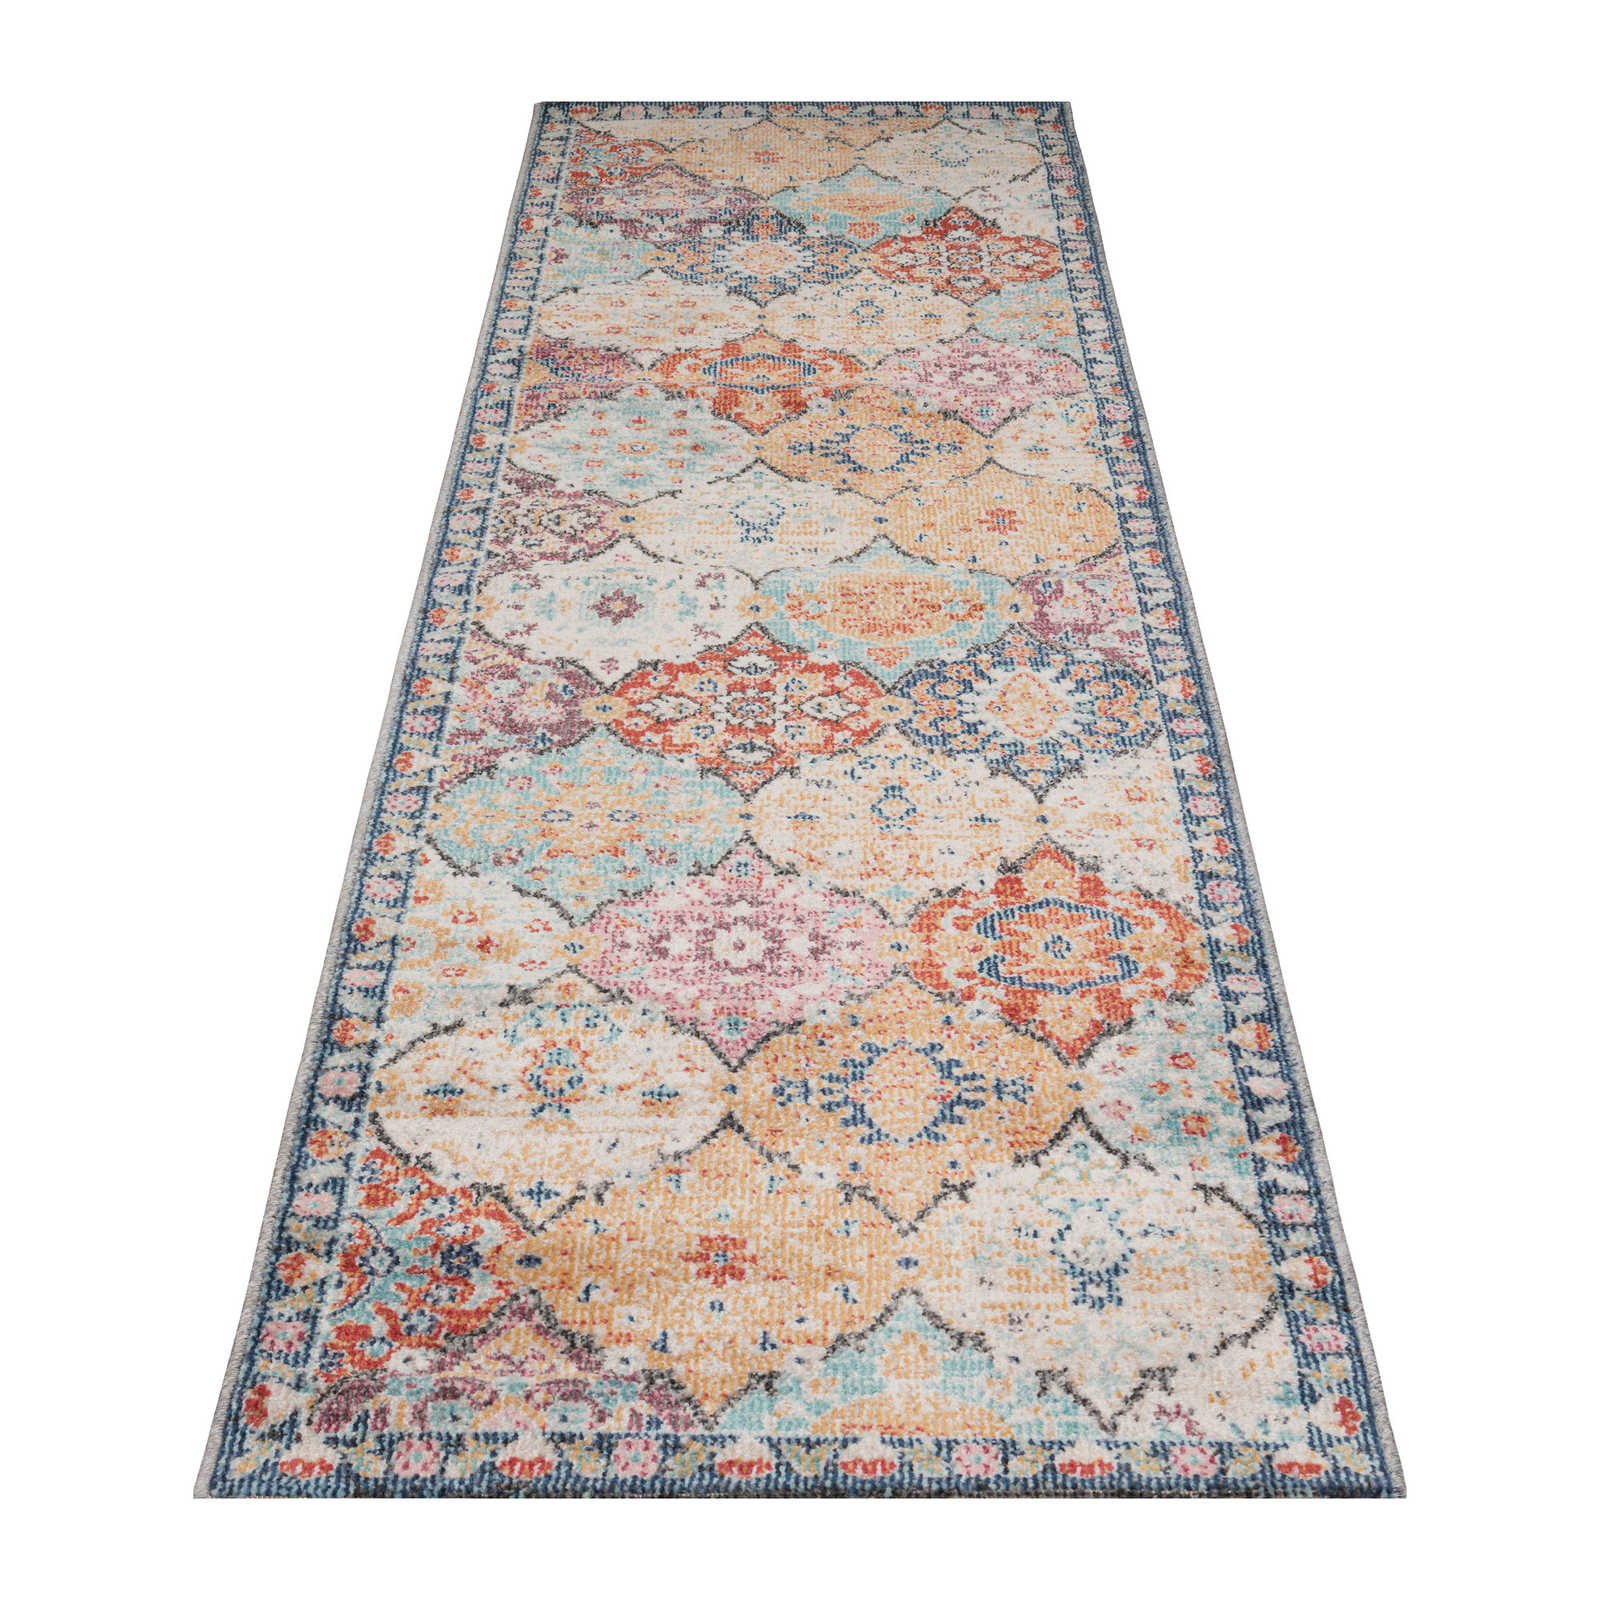 Bont plat geweven tapijt als loper - 300 x 80 cm
